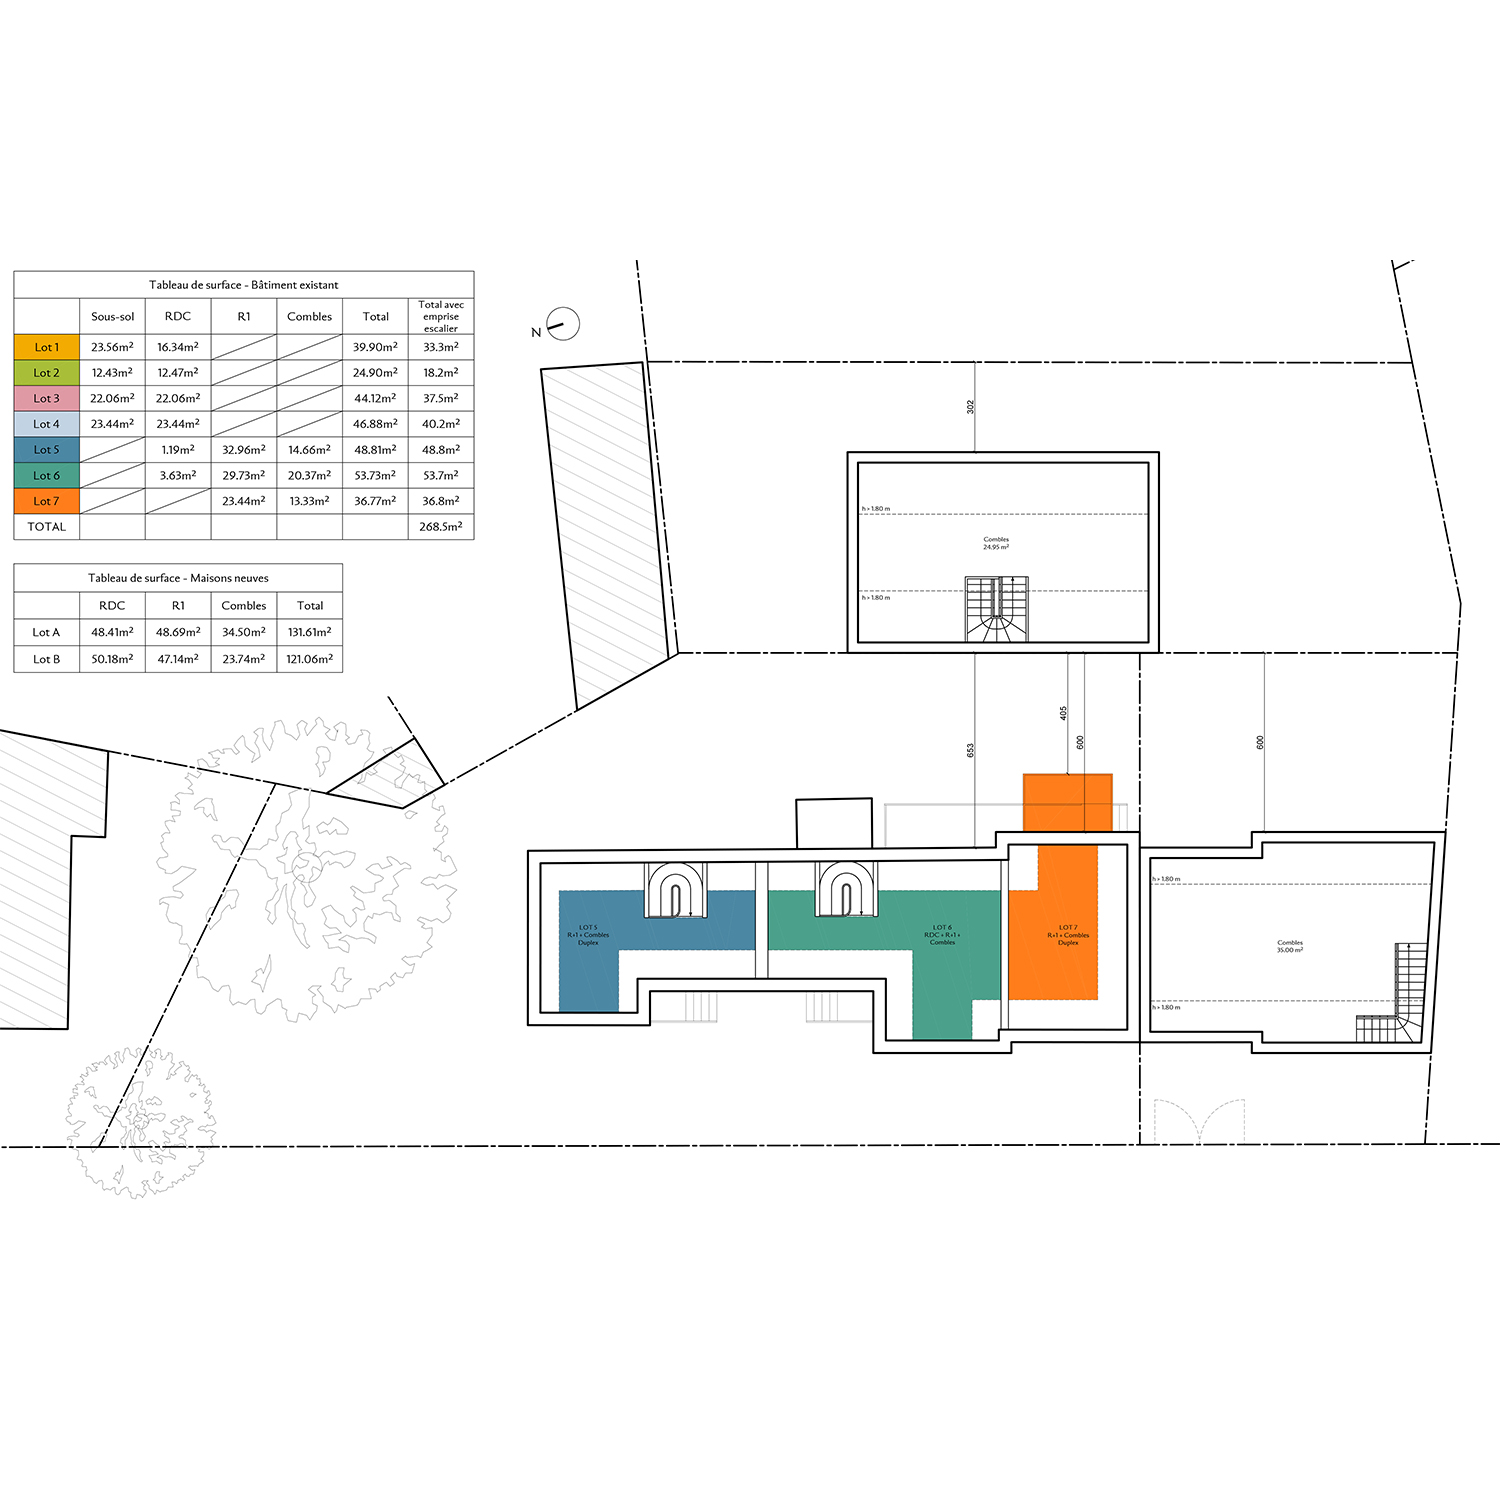 4_Avramova architecte_Bourg-la-Reine_RＩabilitation et crＢtion de logements_Plan combles